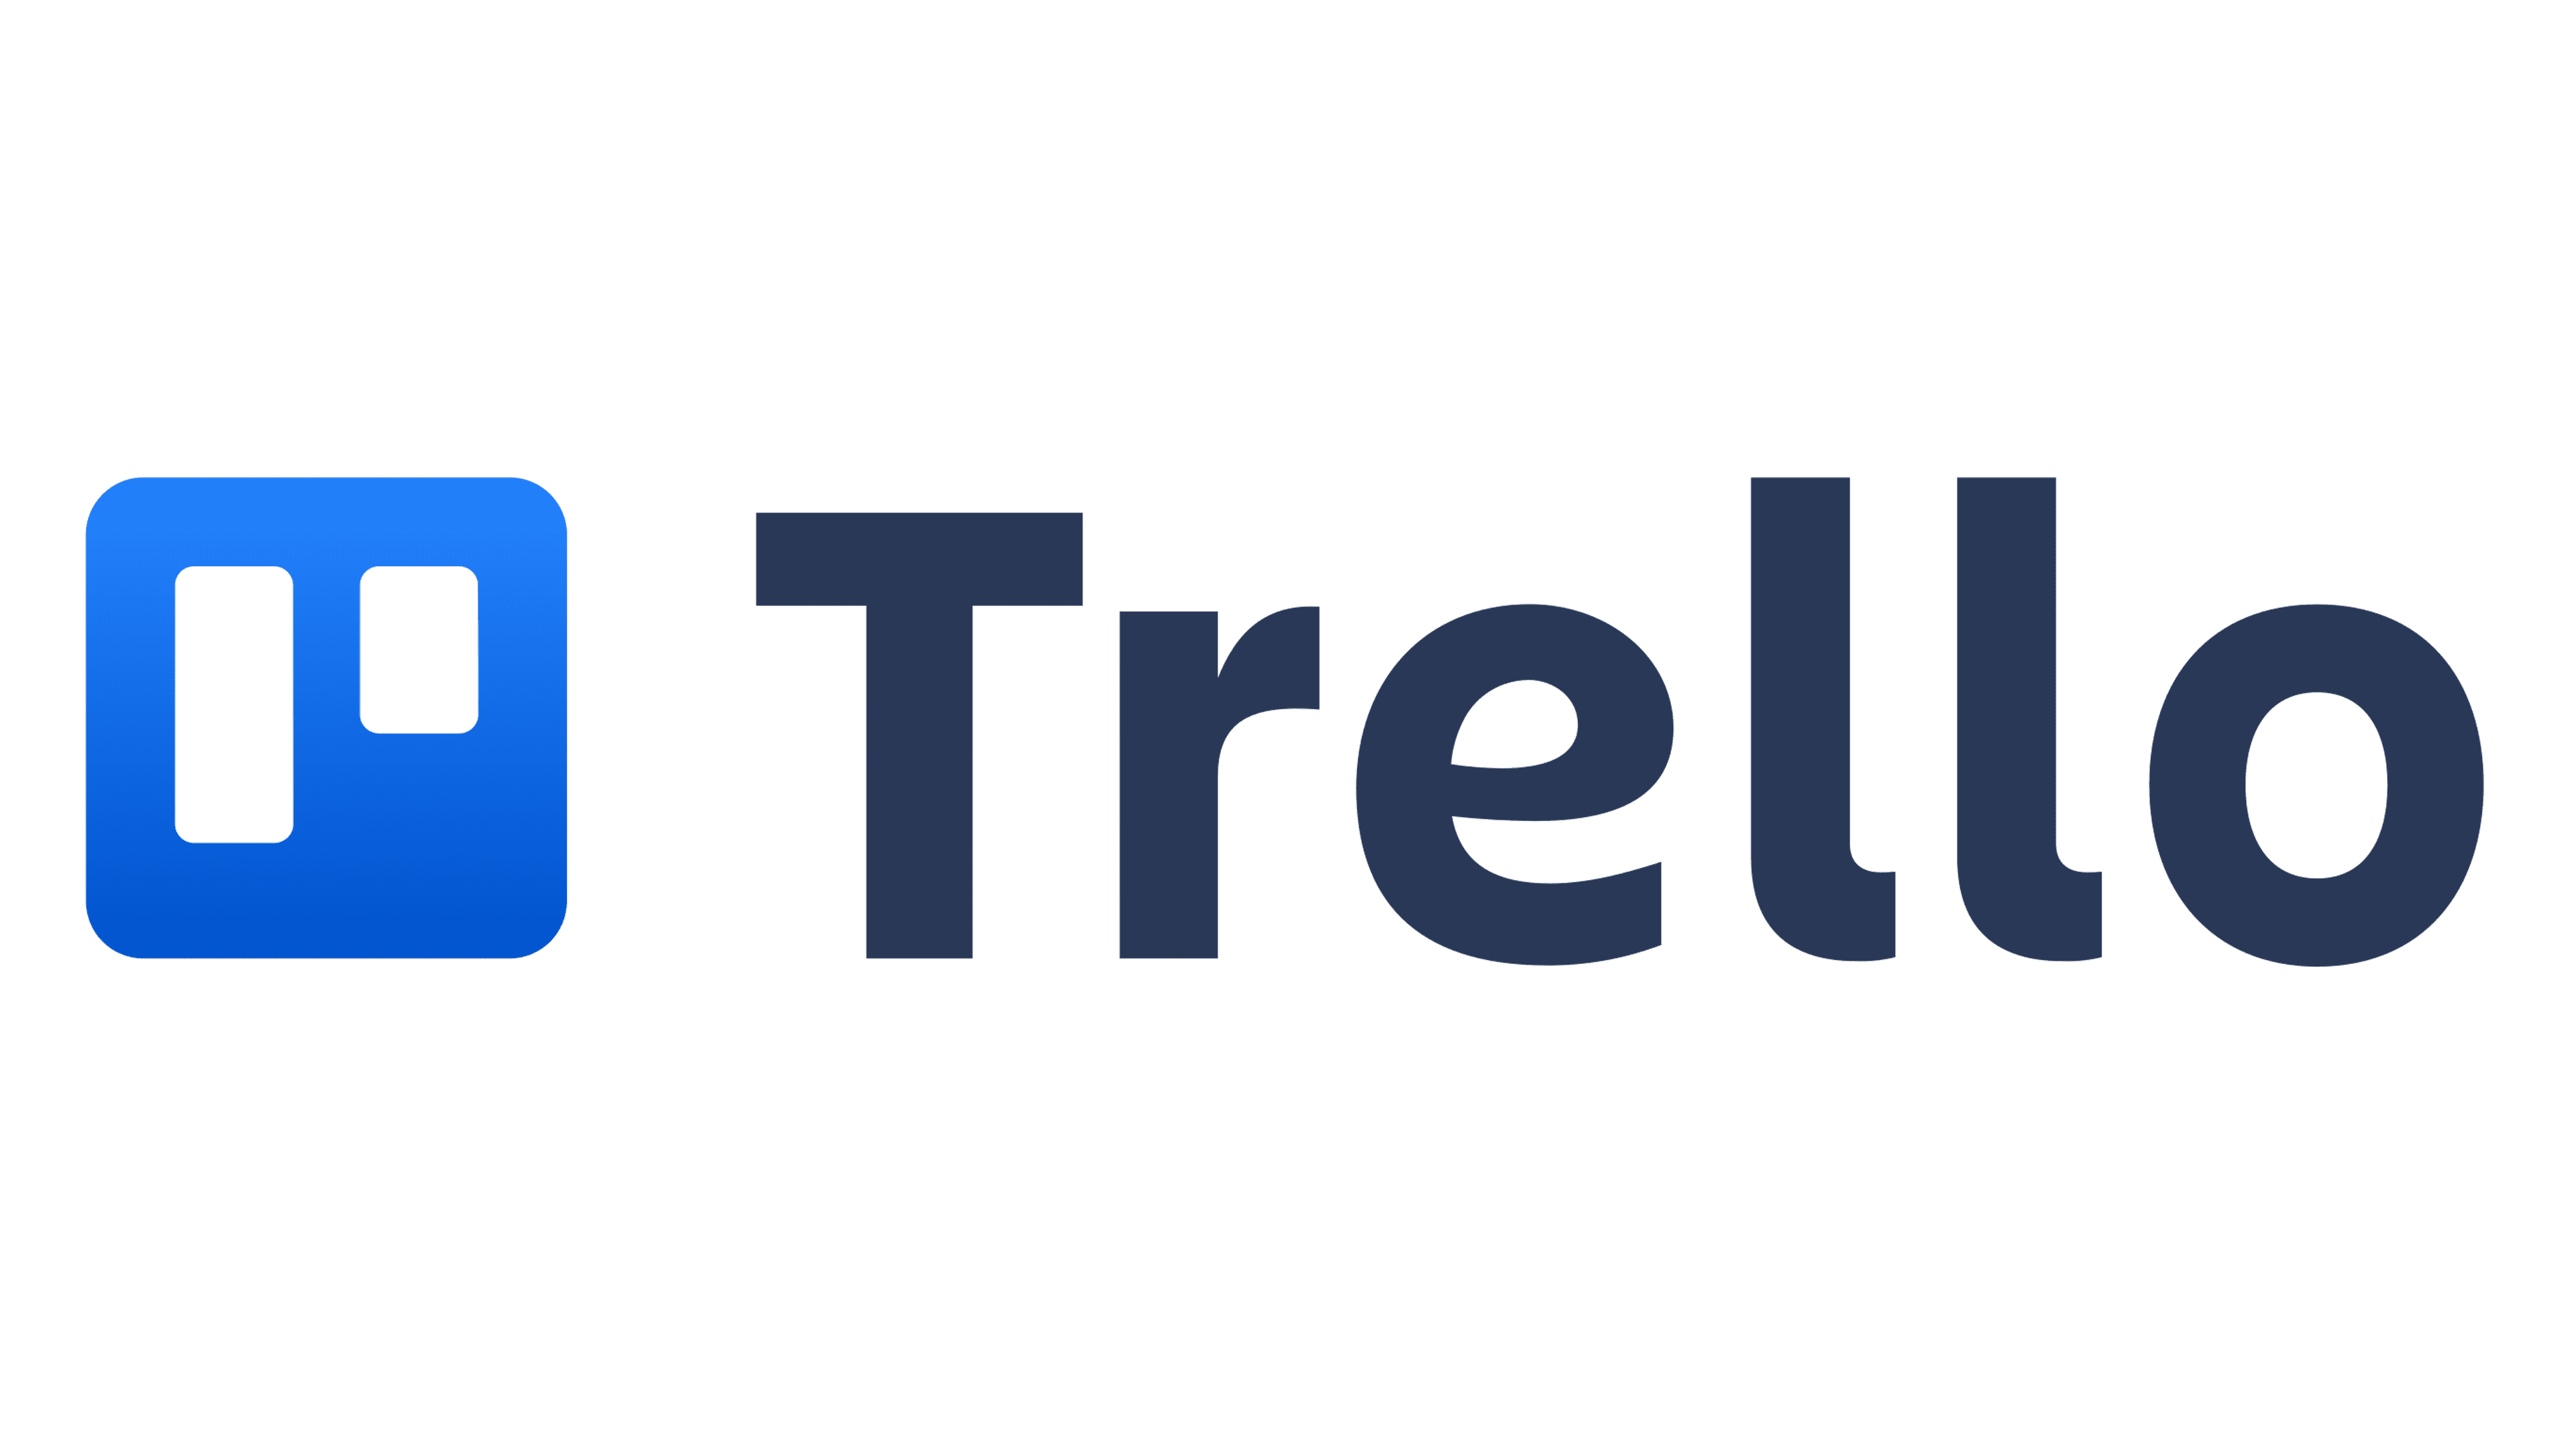 trello logo used for comparison